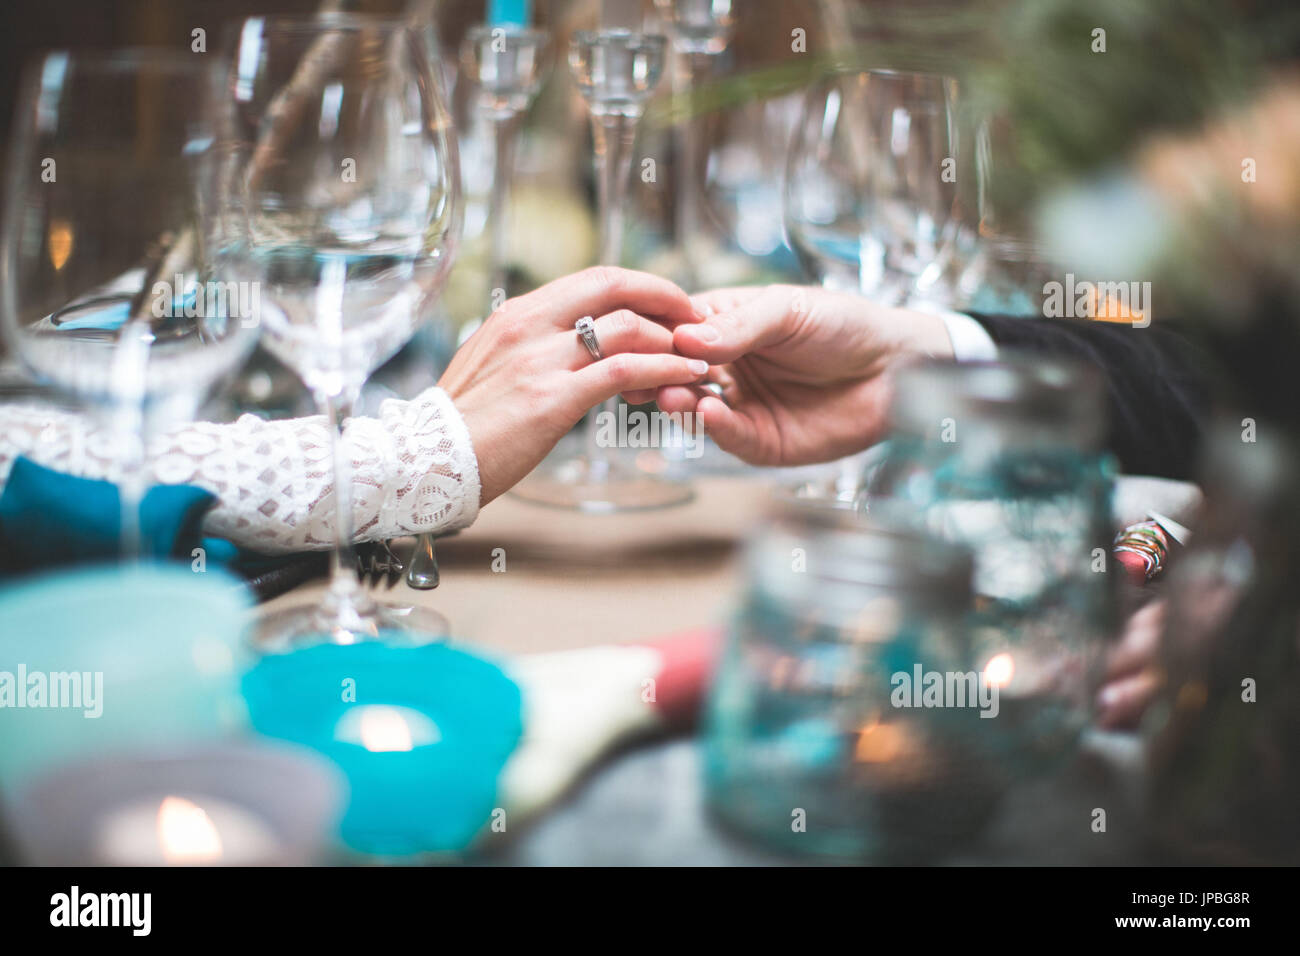 Sposa e lo sposo a coperti da tavola al matrimonio indiano, mani, touch, tenerezza, close up Foto Stock